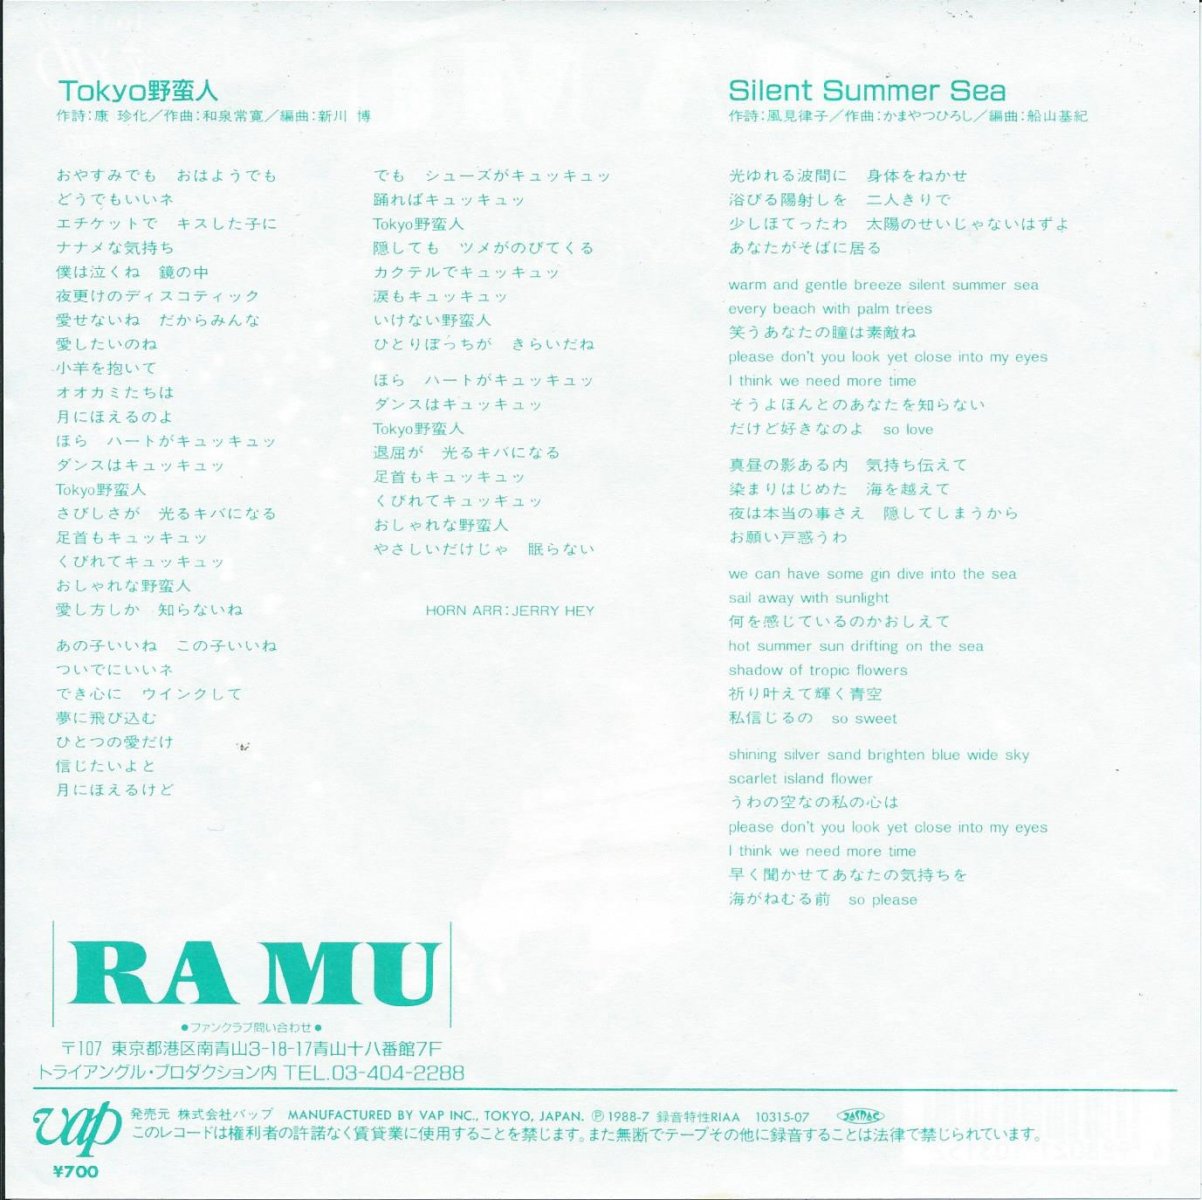 ラ ムー Ramu Tokyo野蛮人 Tokyo Yabanjin Silent Summer Sea 7 Hip Tank Records